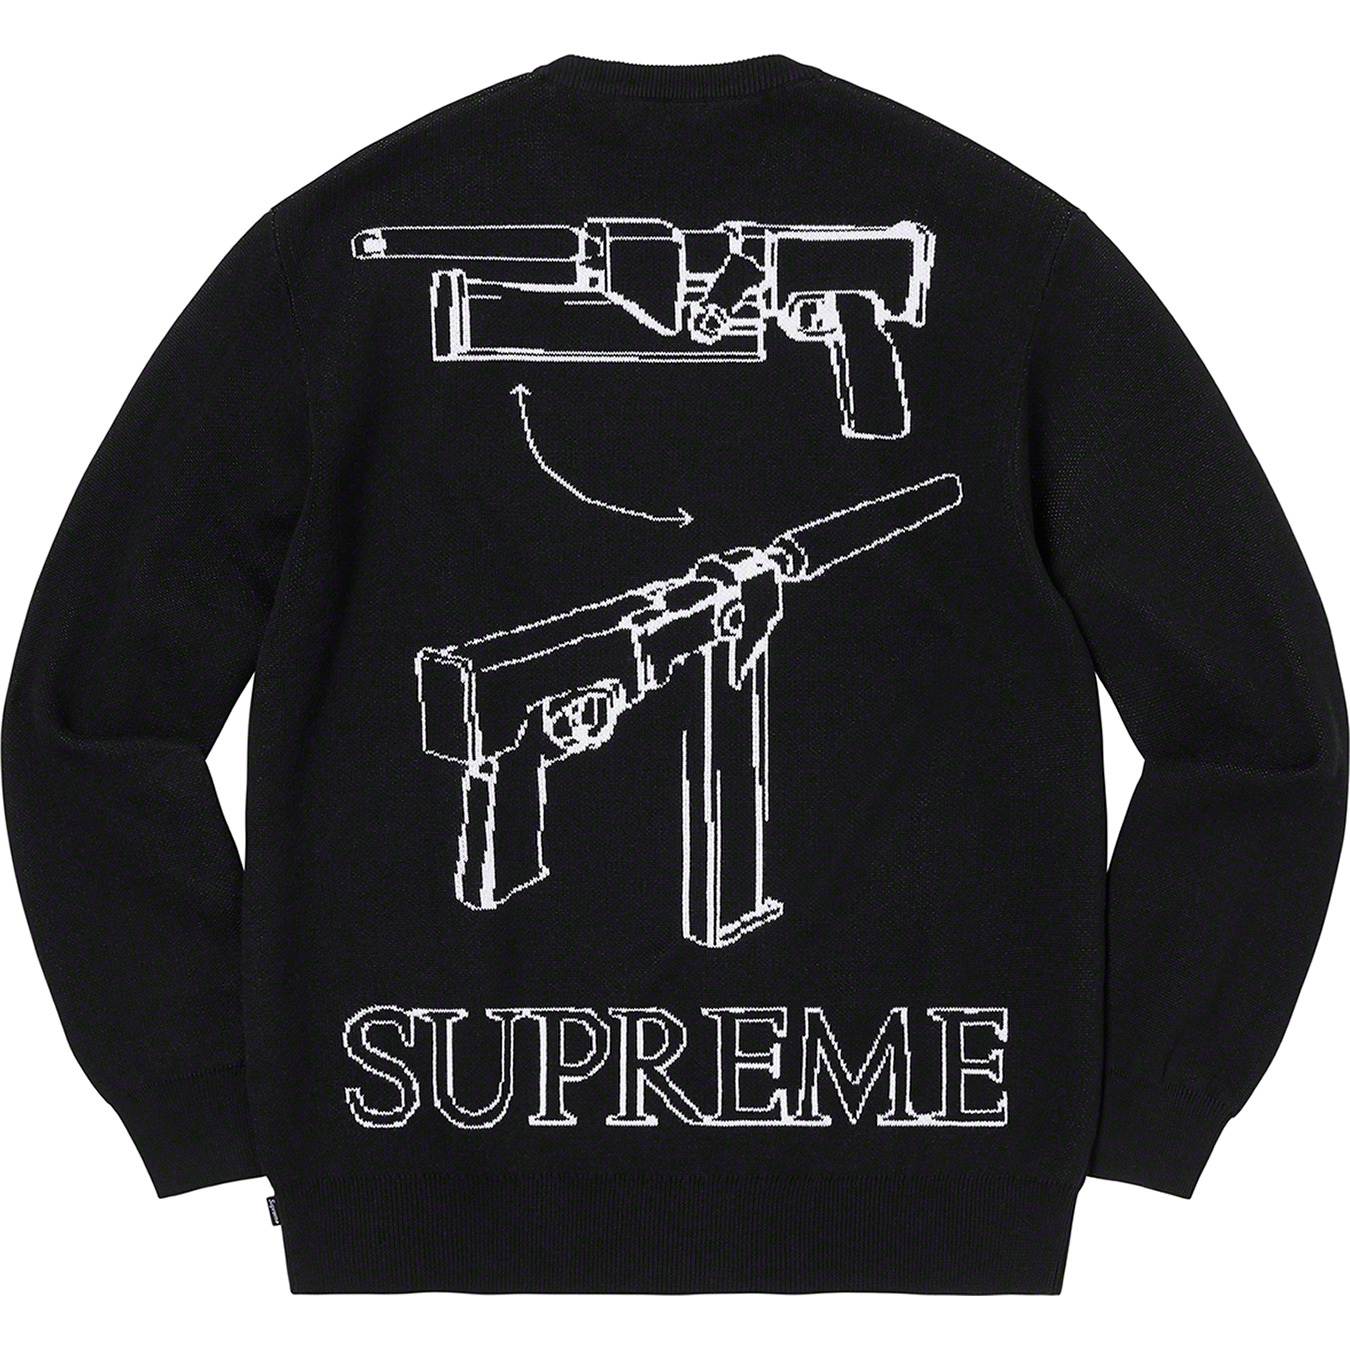 Supreme/Aeon Flux Sweater